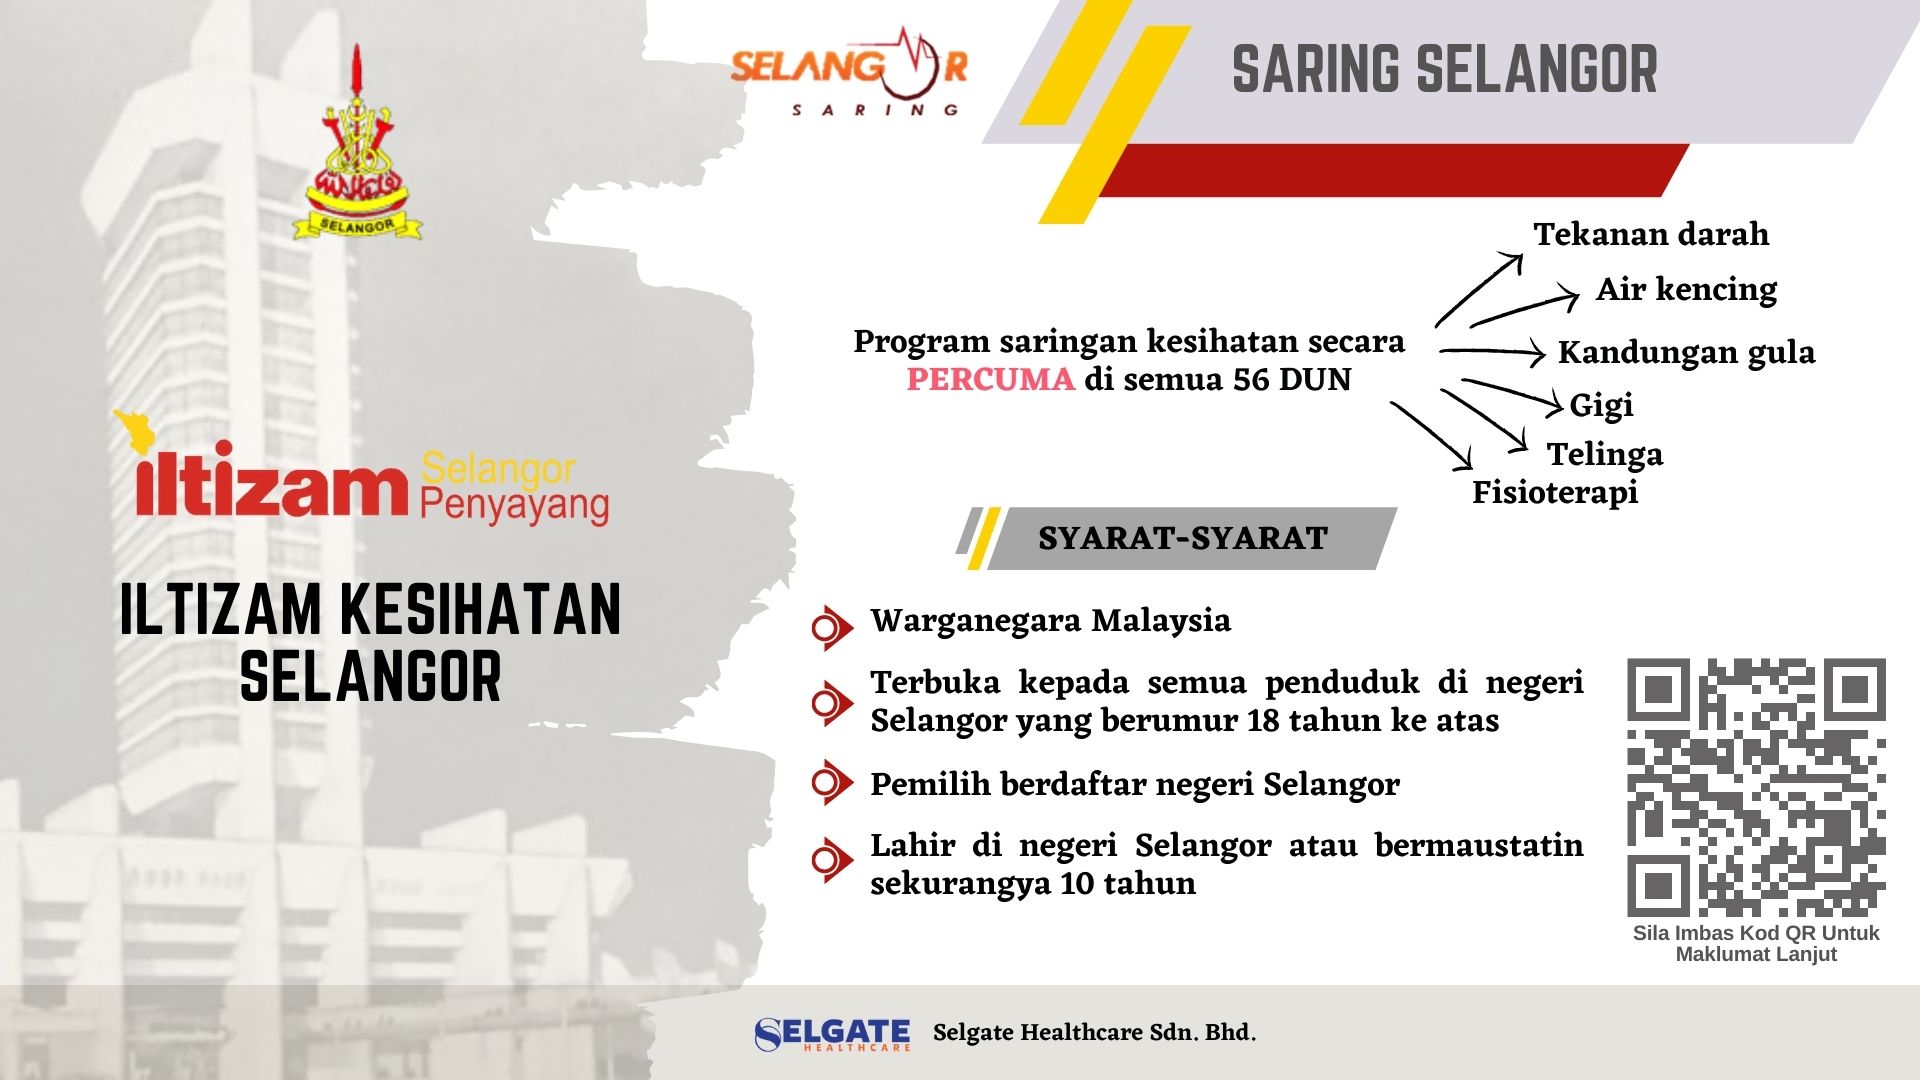 Iltizam Selangor Penyayang